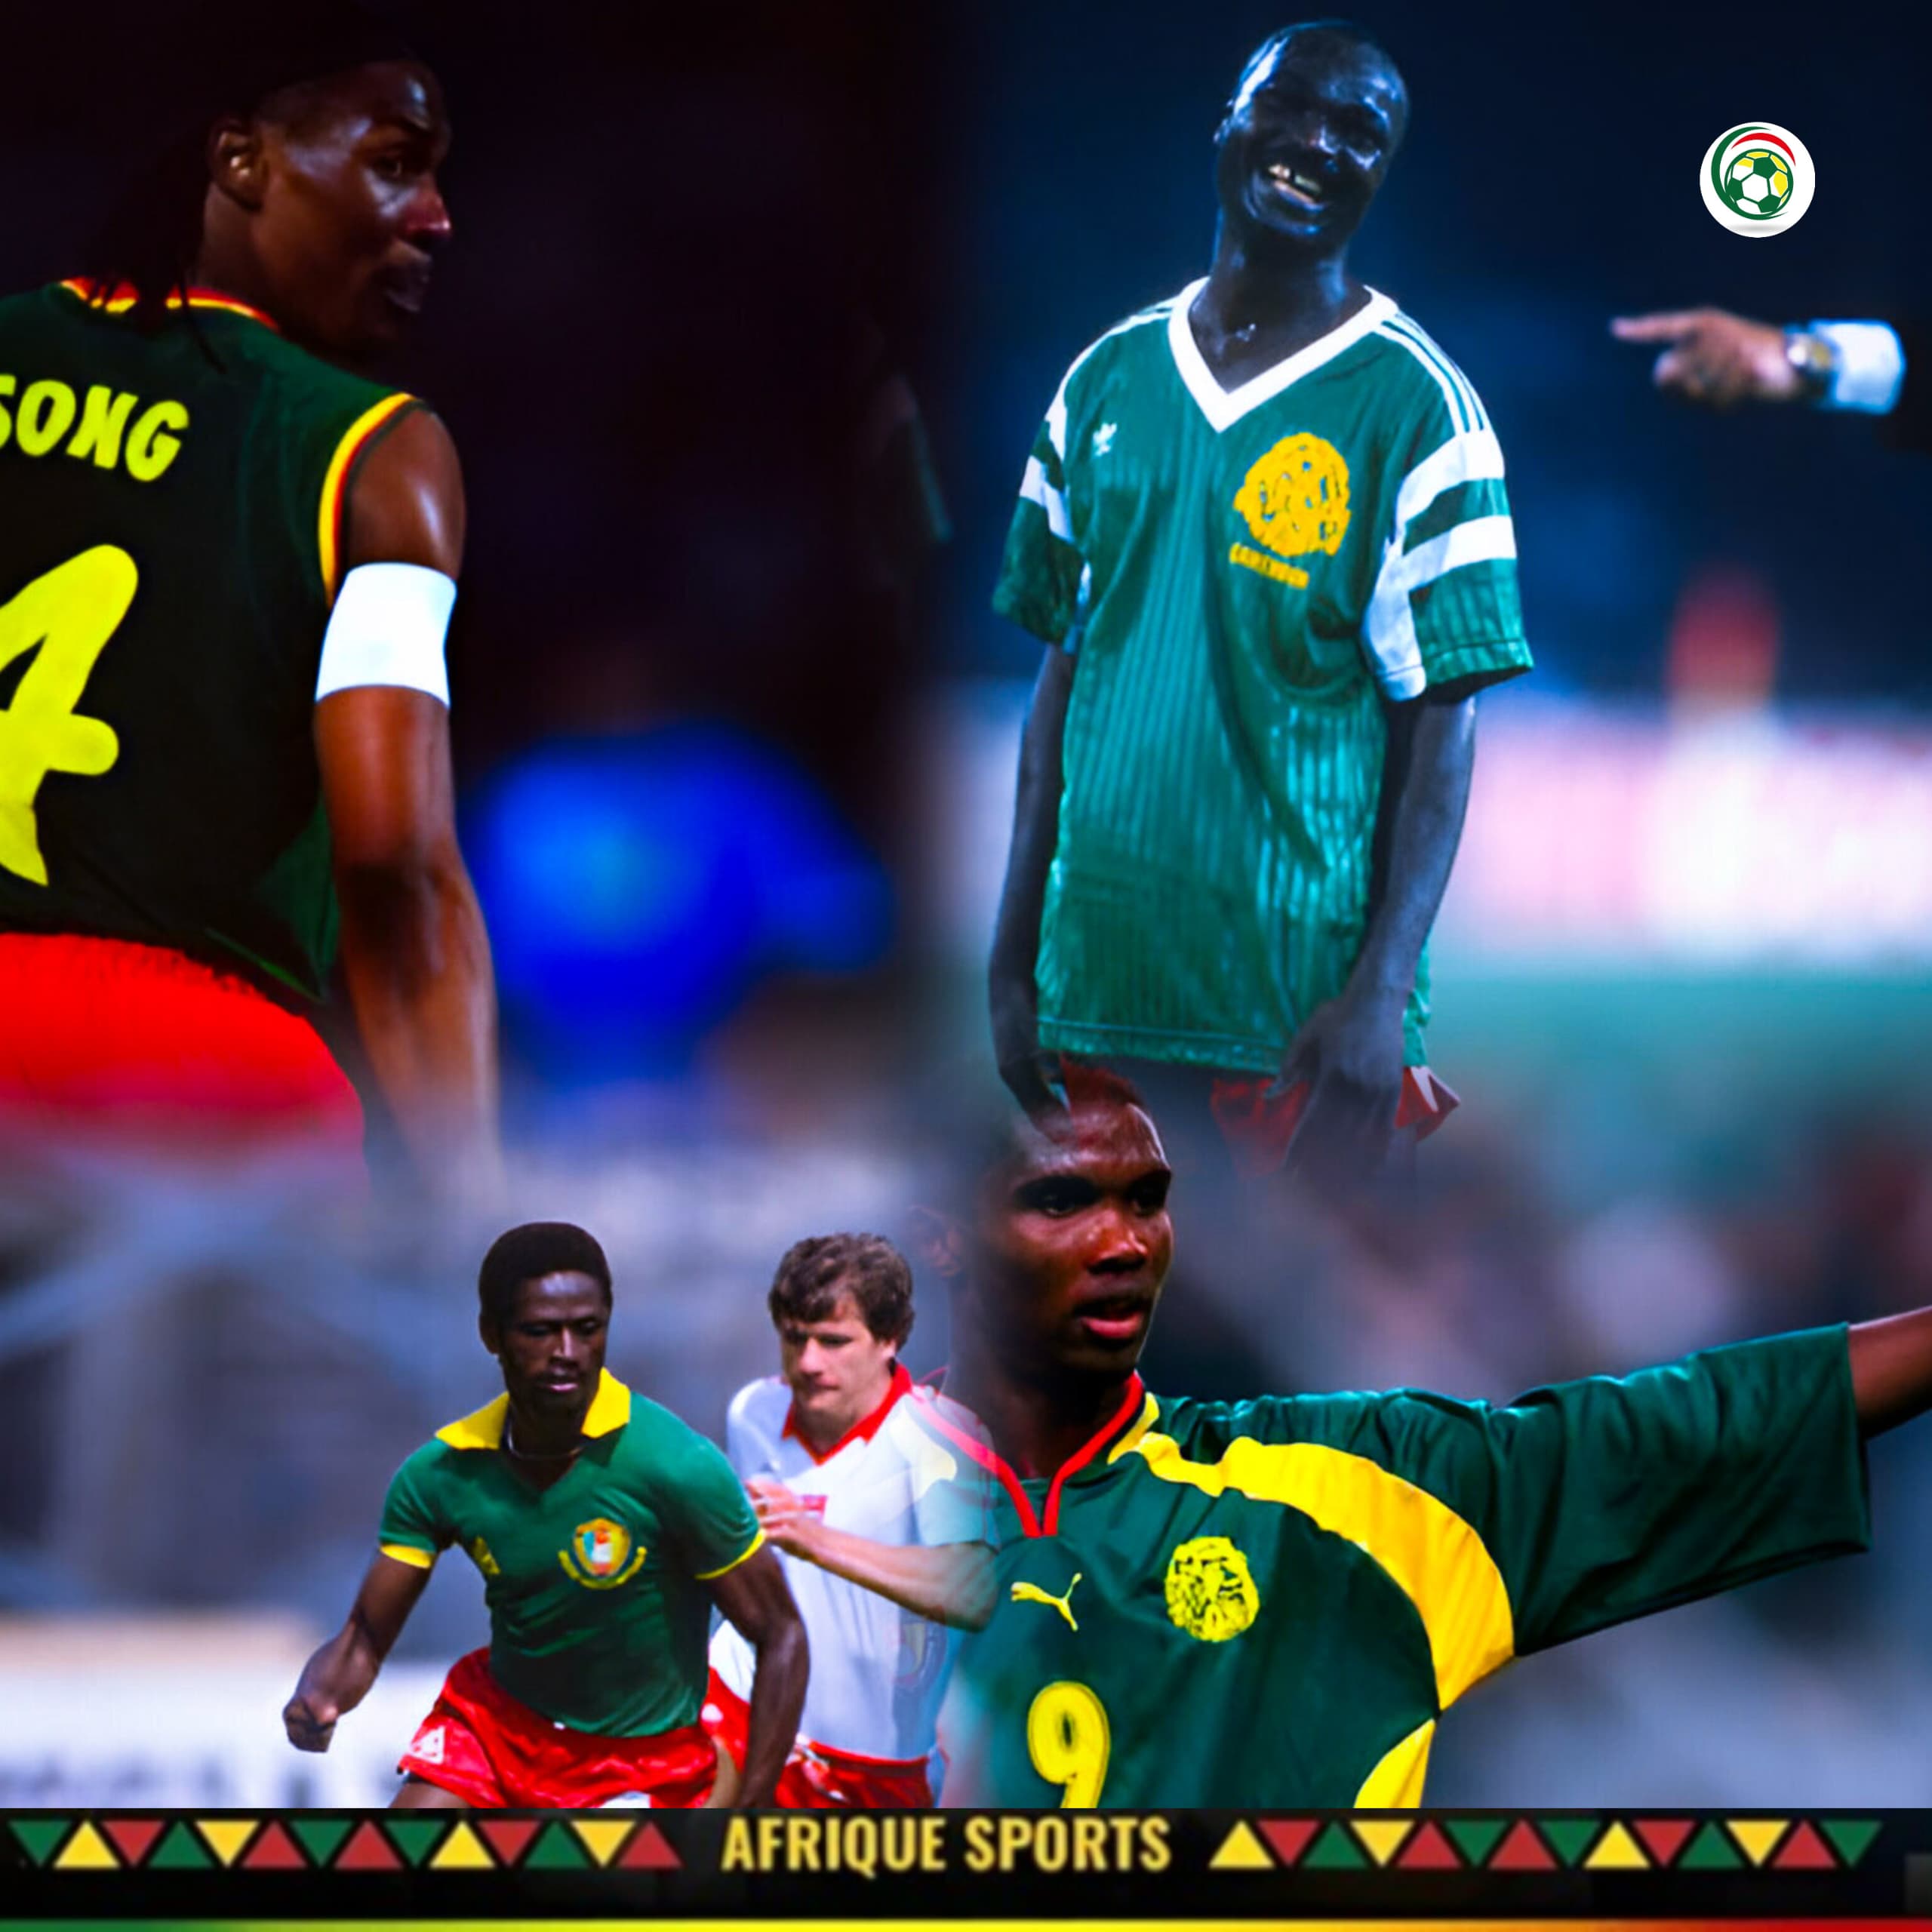 Roger Milla 2è, Foé 8è, Eto’o, le Top 10 des plus grands joueurs Camerounais de tous les temps